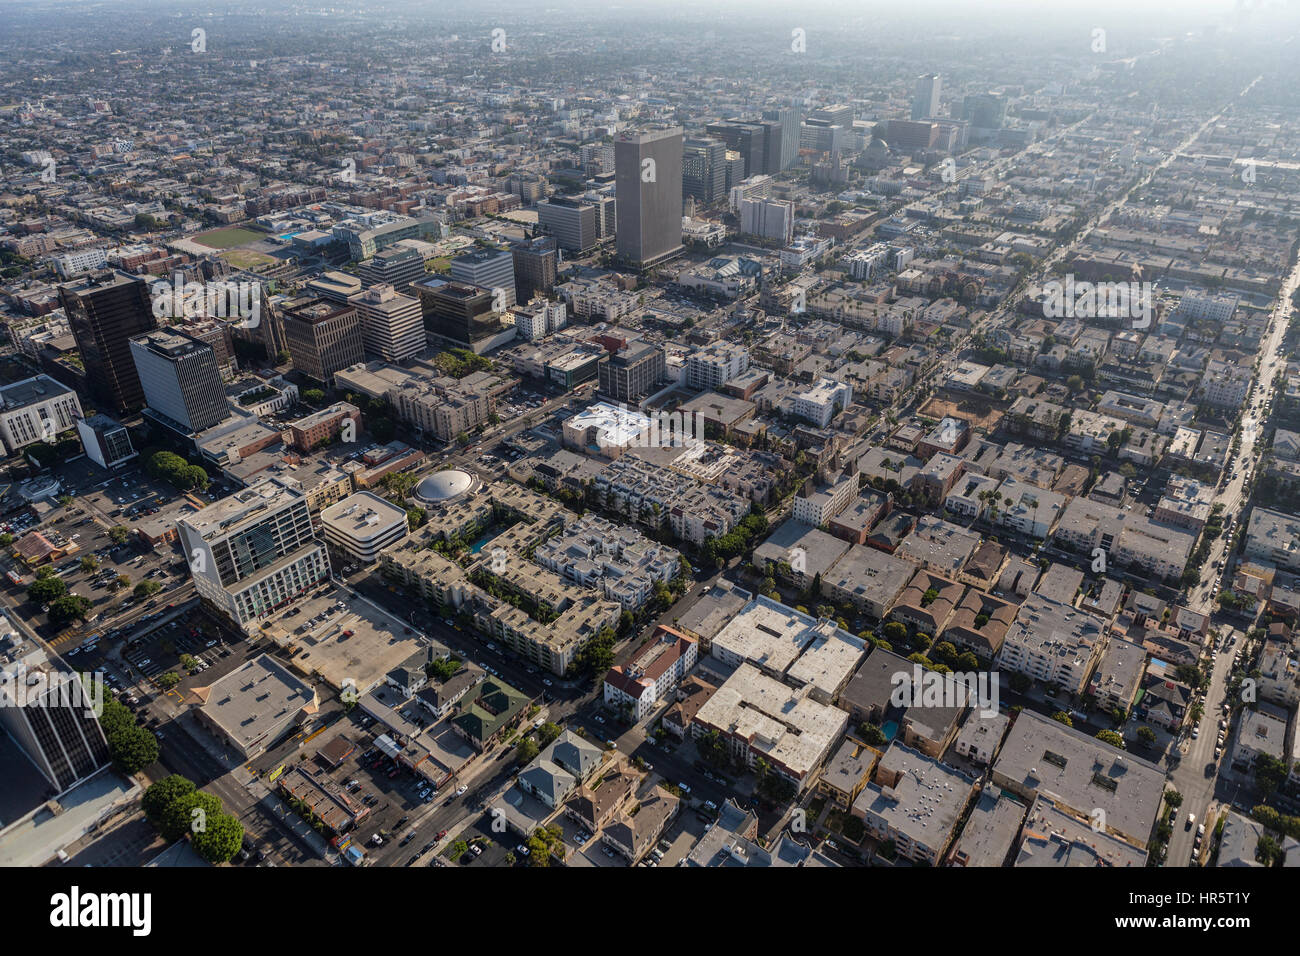 Los Angeles, California, Stati Uniti d'America - 6 Agosto 2016: vista aerea del pomeriggio estivo smog sopra il mid Wilshire e Korea Town quartieri. Foto Stock